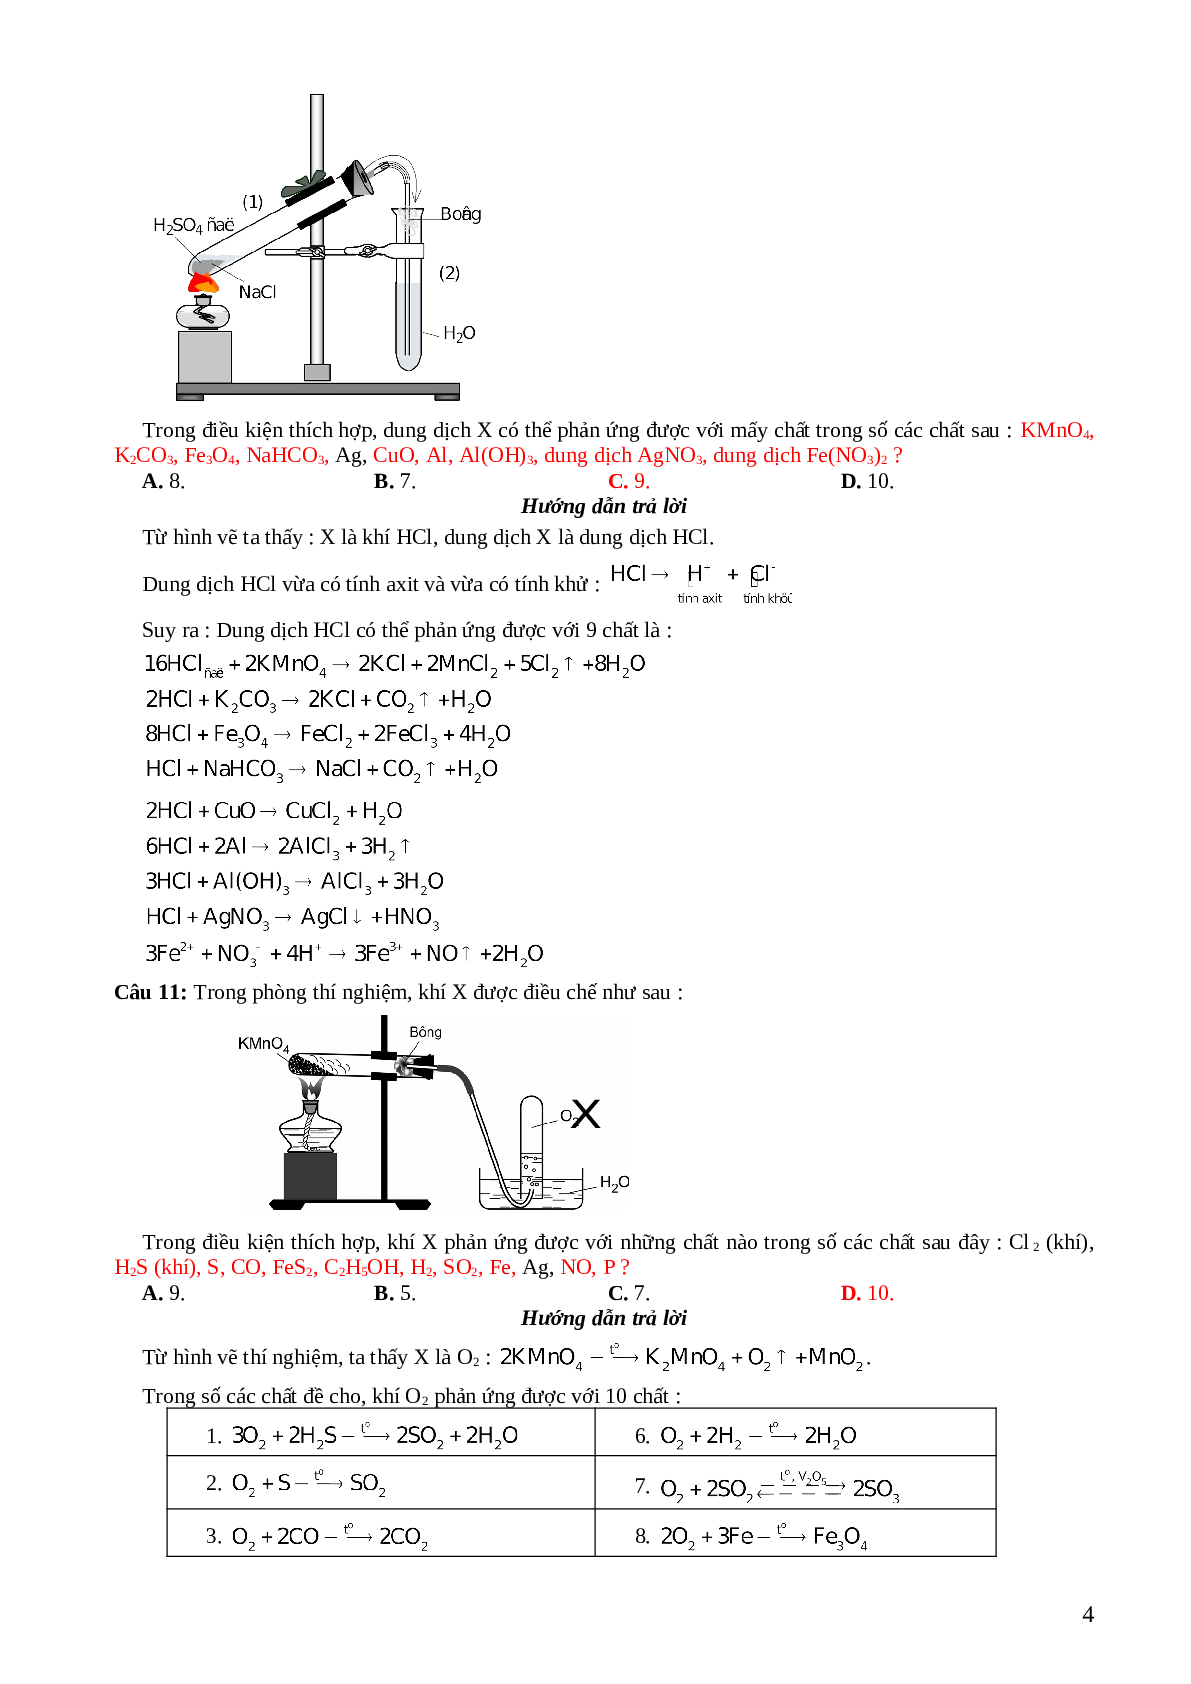 33 câu trắc nghiệm về hình  vẽ thí nghiệm hóa học lớp 12 có đáp án 2023 (trang 4)